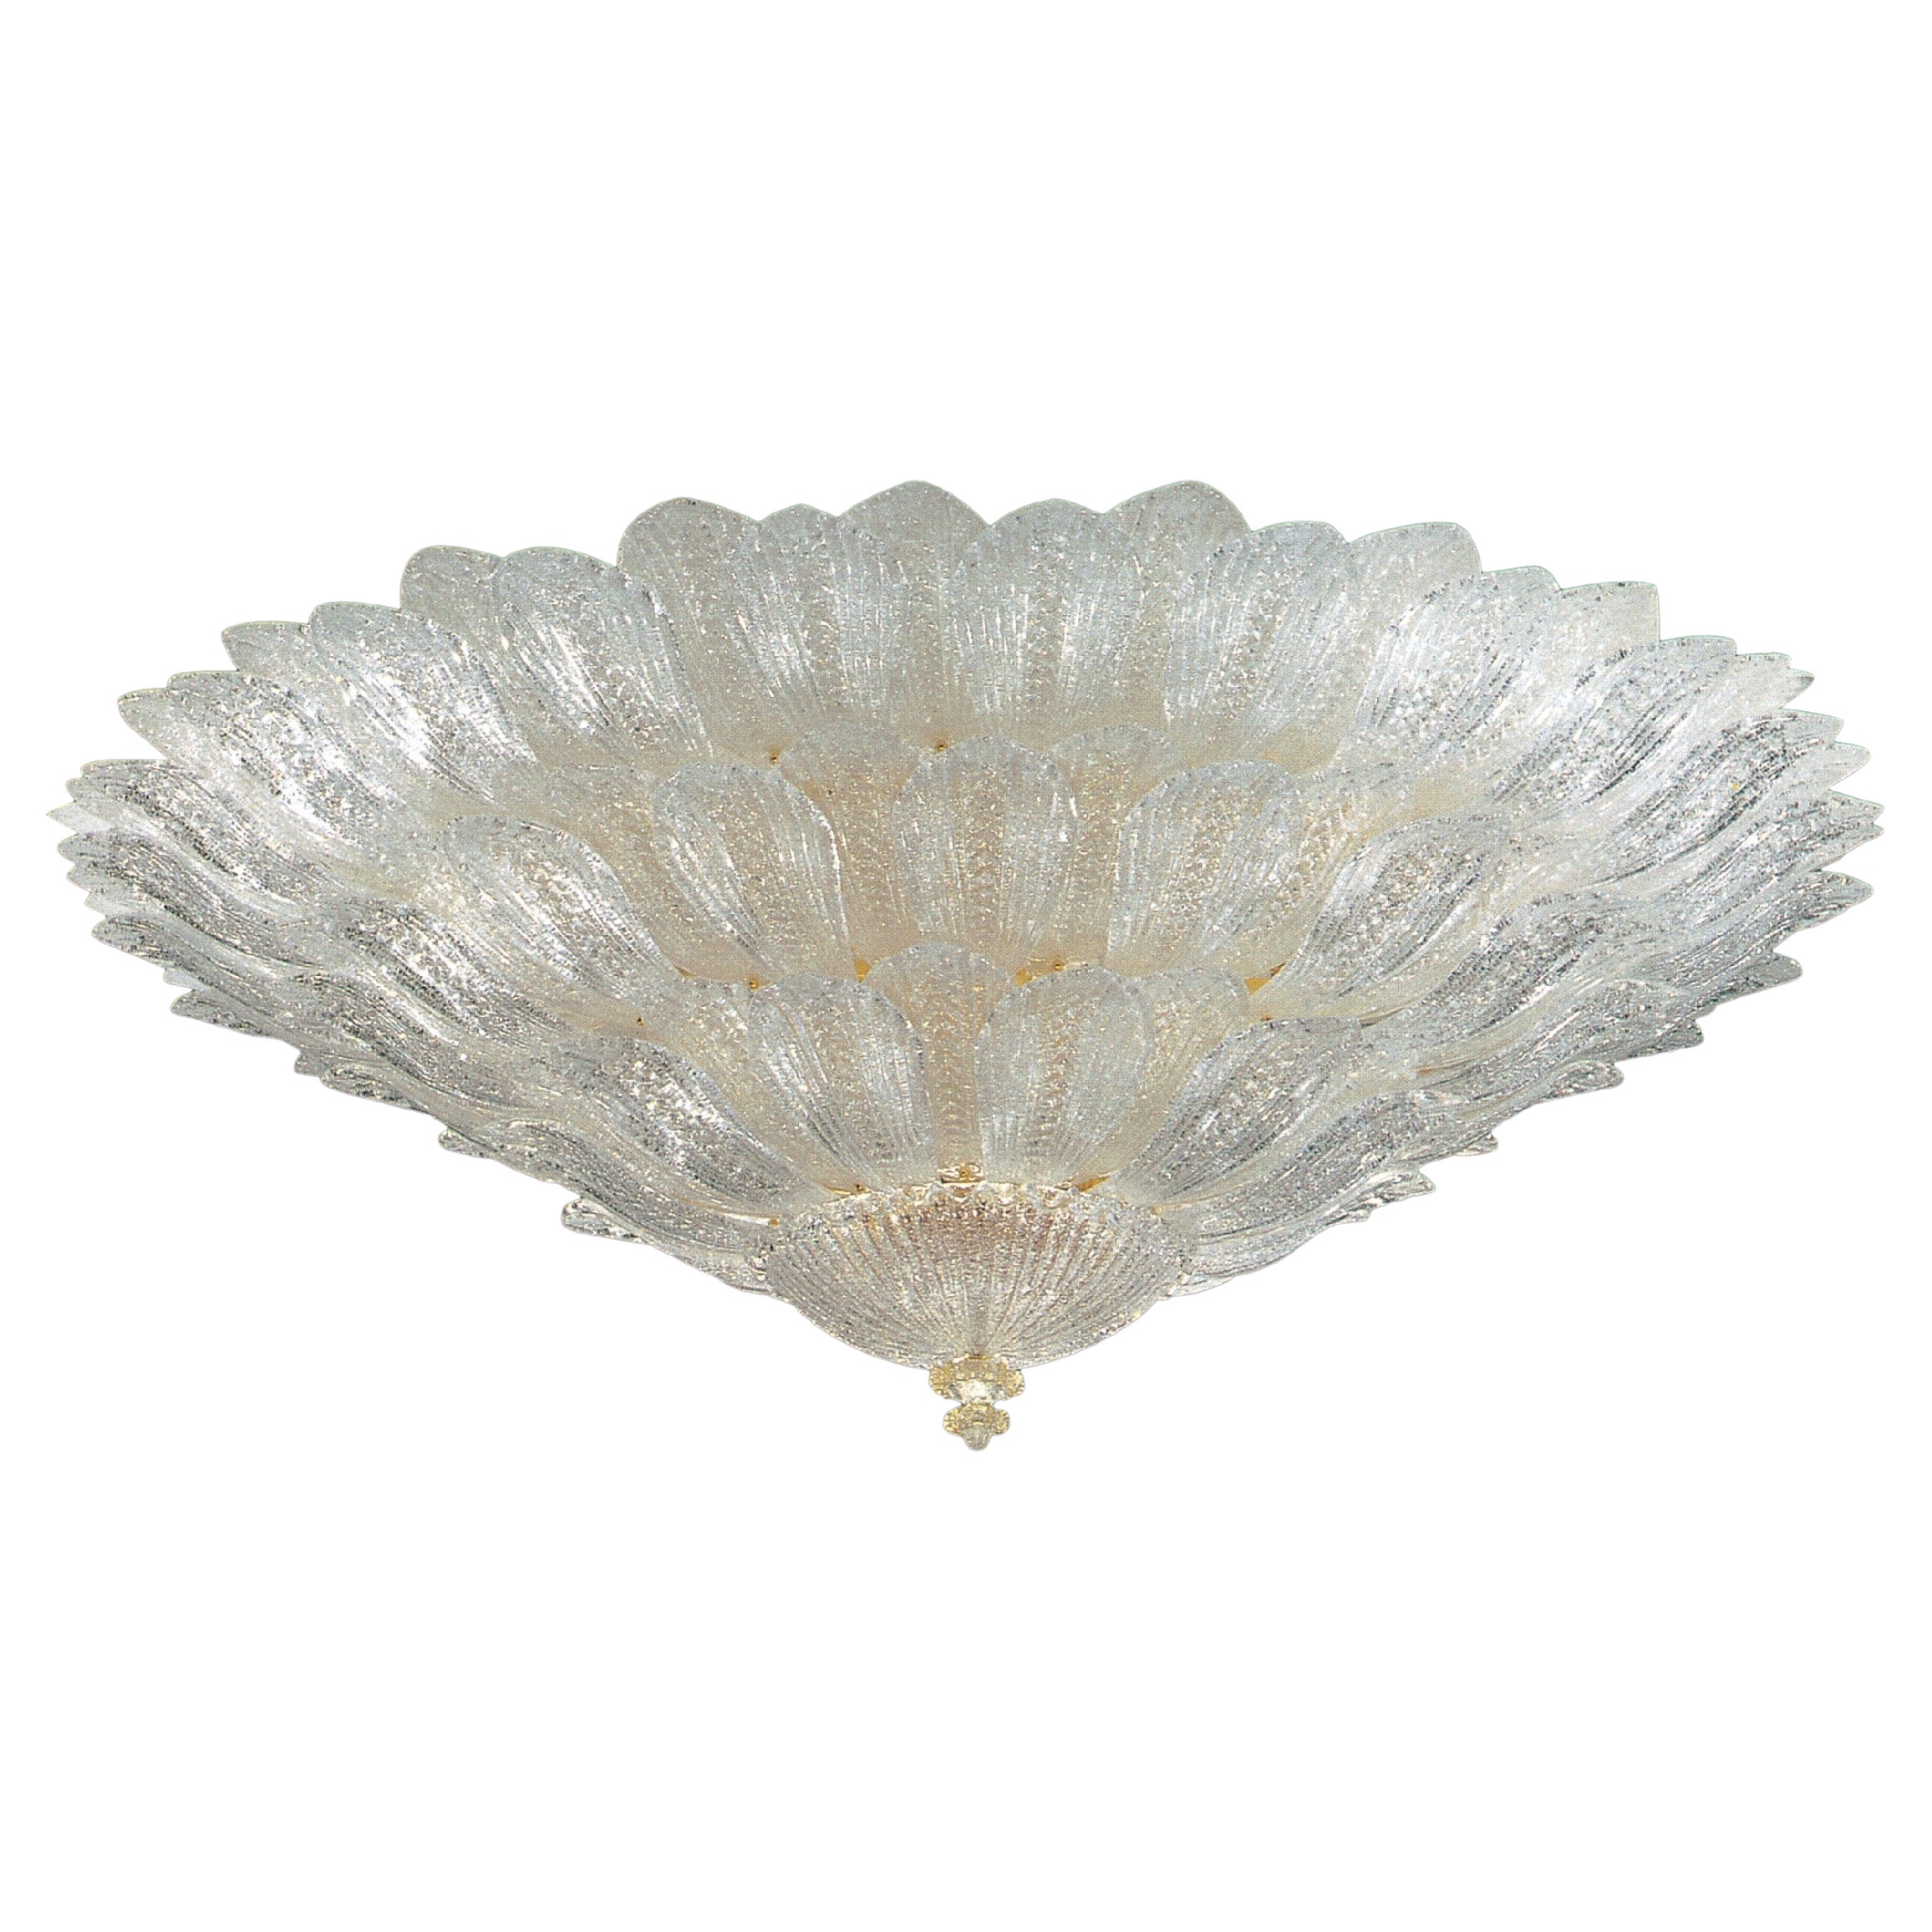 Fabulous Italian Murano Glass Monumental Ceiling Light or Flushmount For Sale